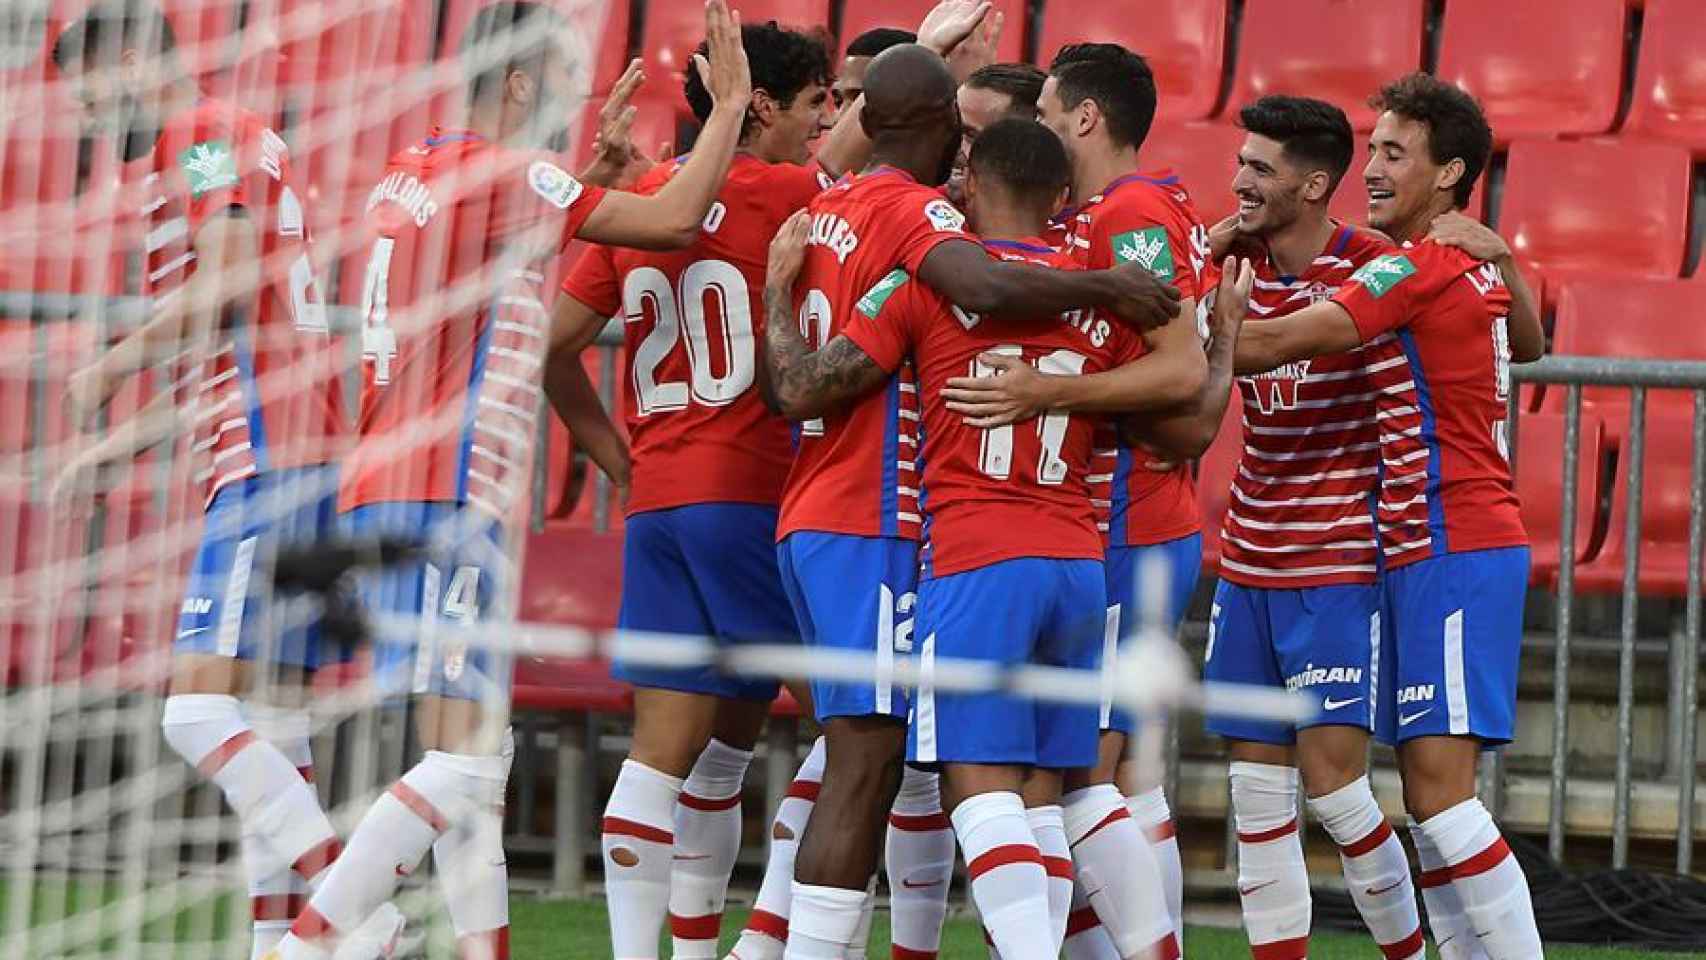 Piña de los jugadores del Granada para celebrar el gol ante el Alavés en la jornada 2 de La Liga